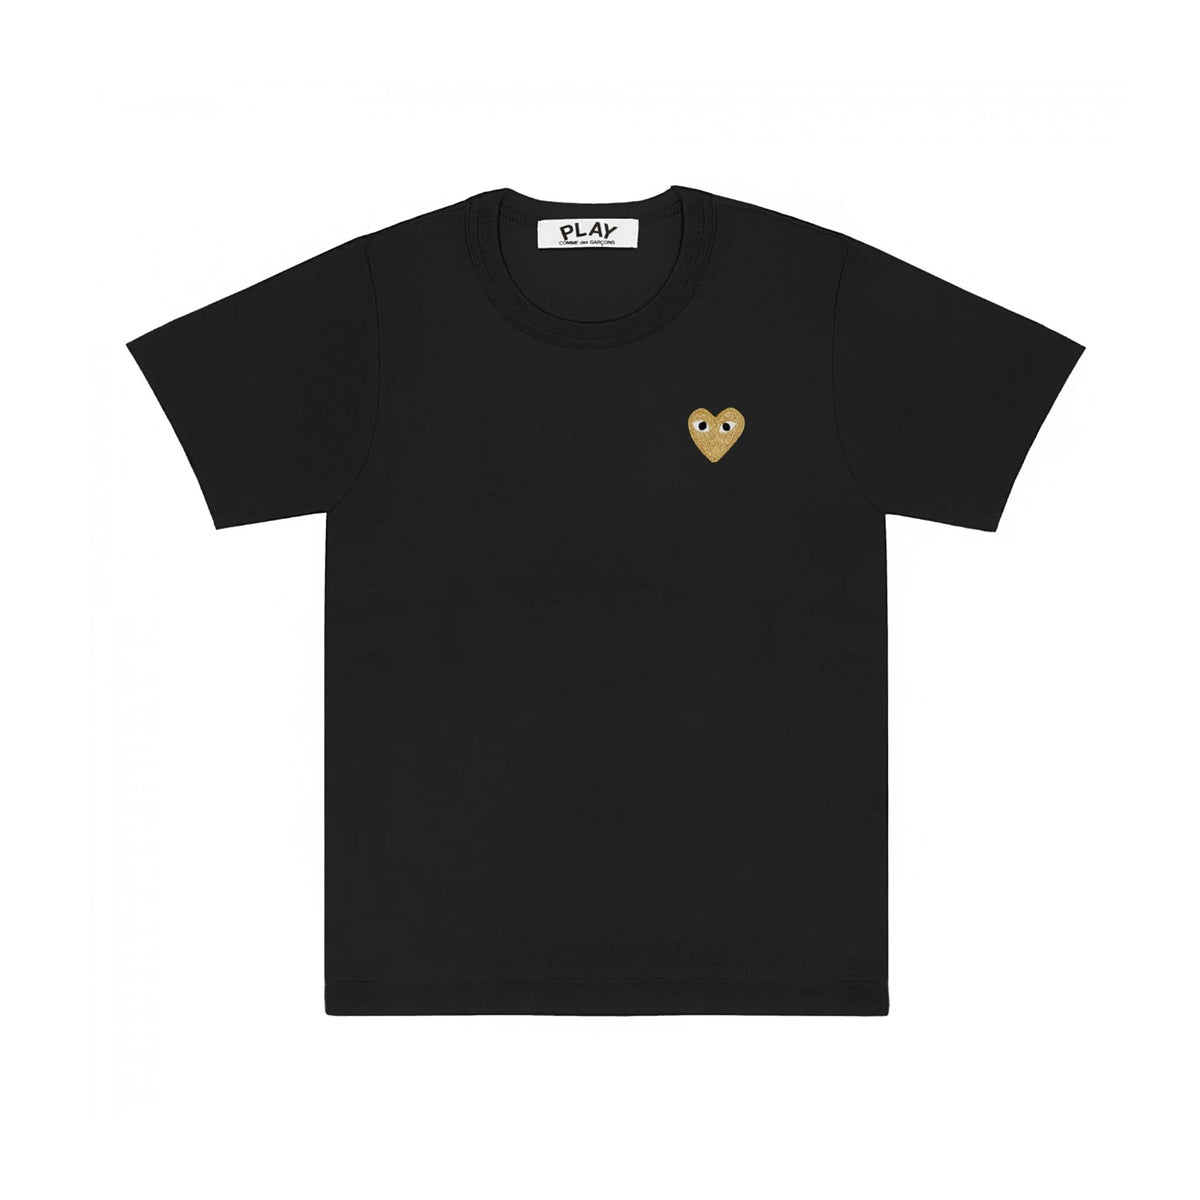 PLAY T-Shirt Herren gold Herz schwarz